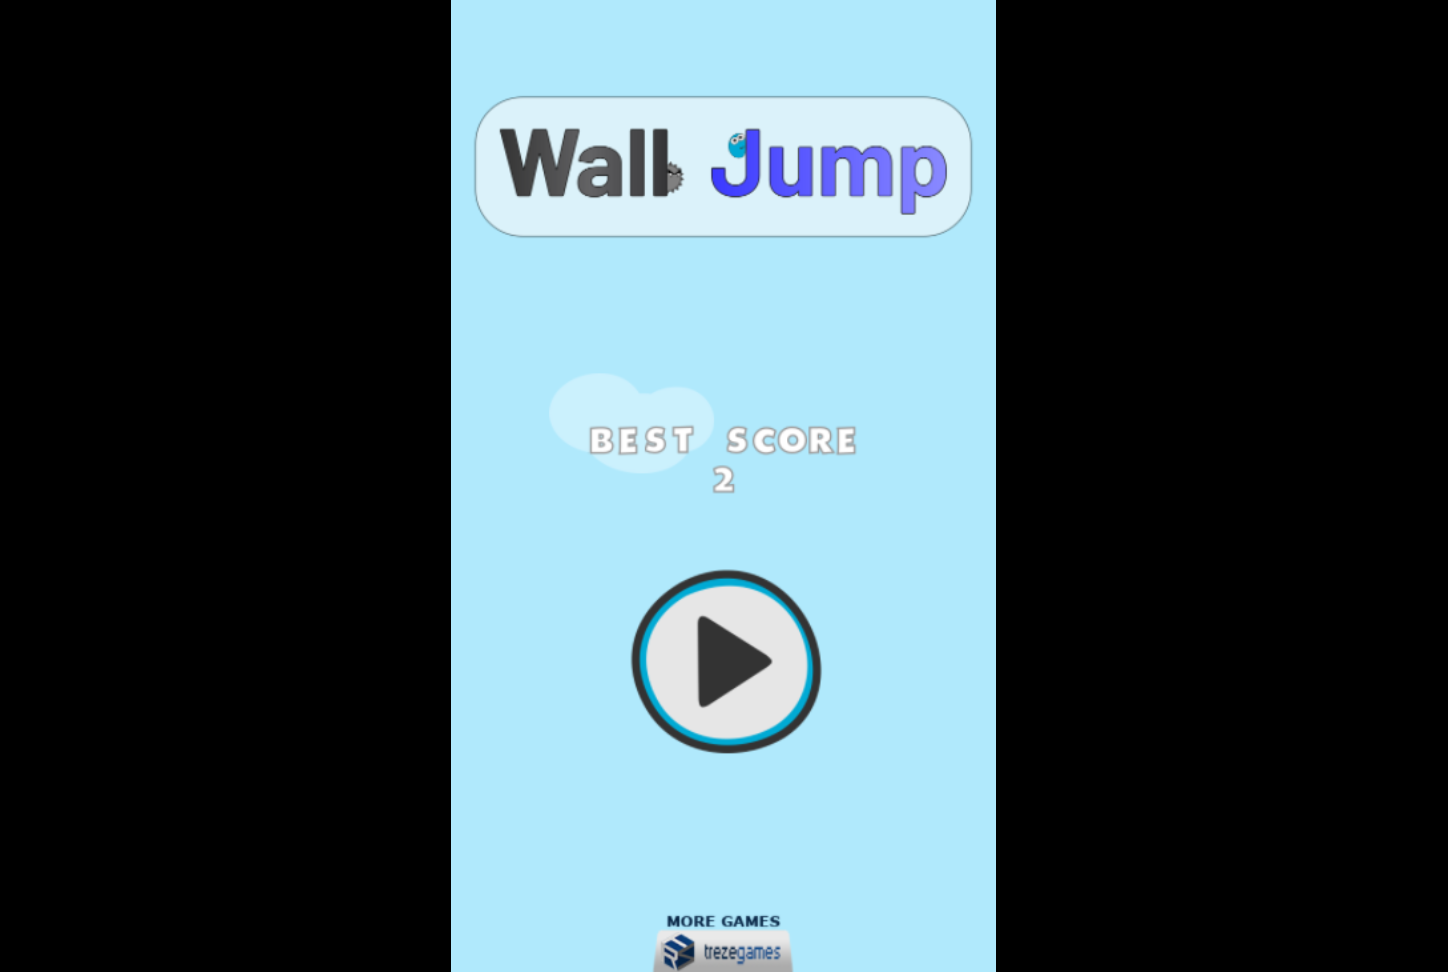 Wall jump